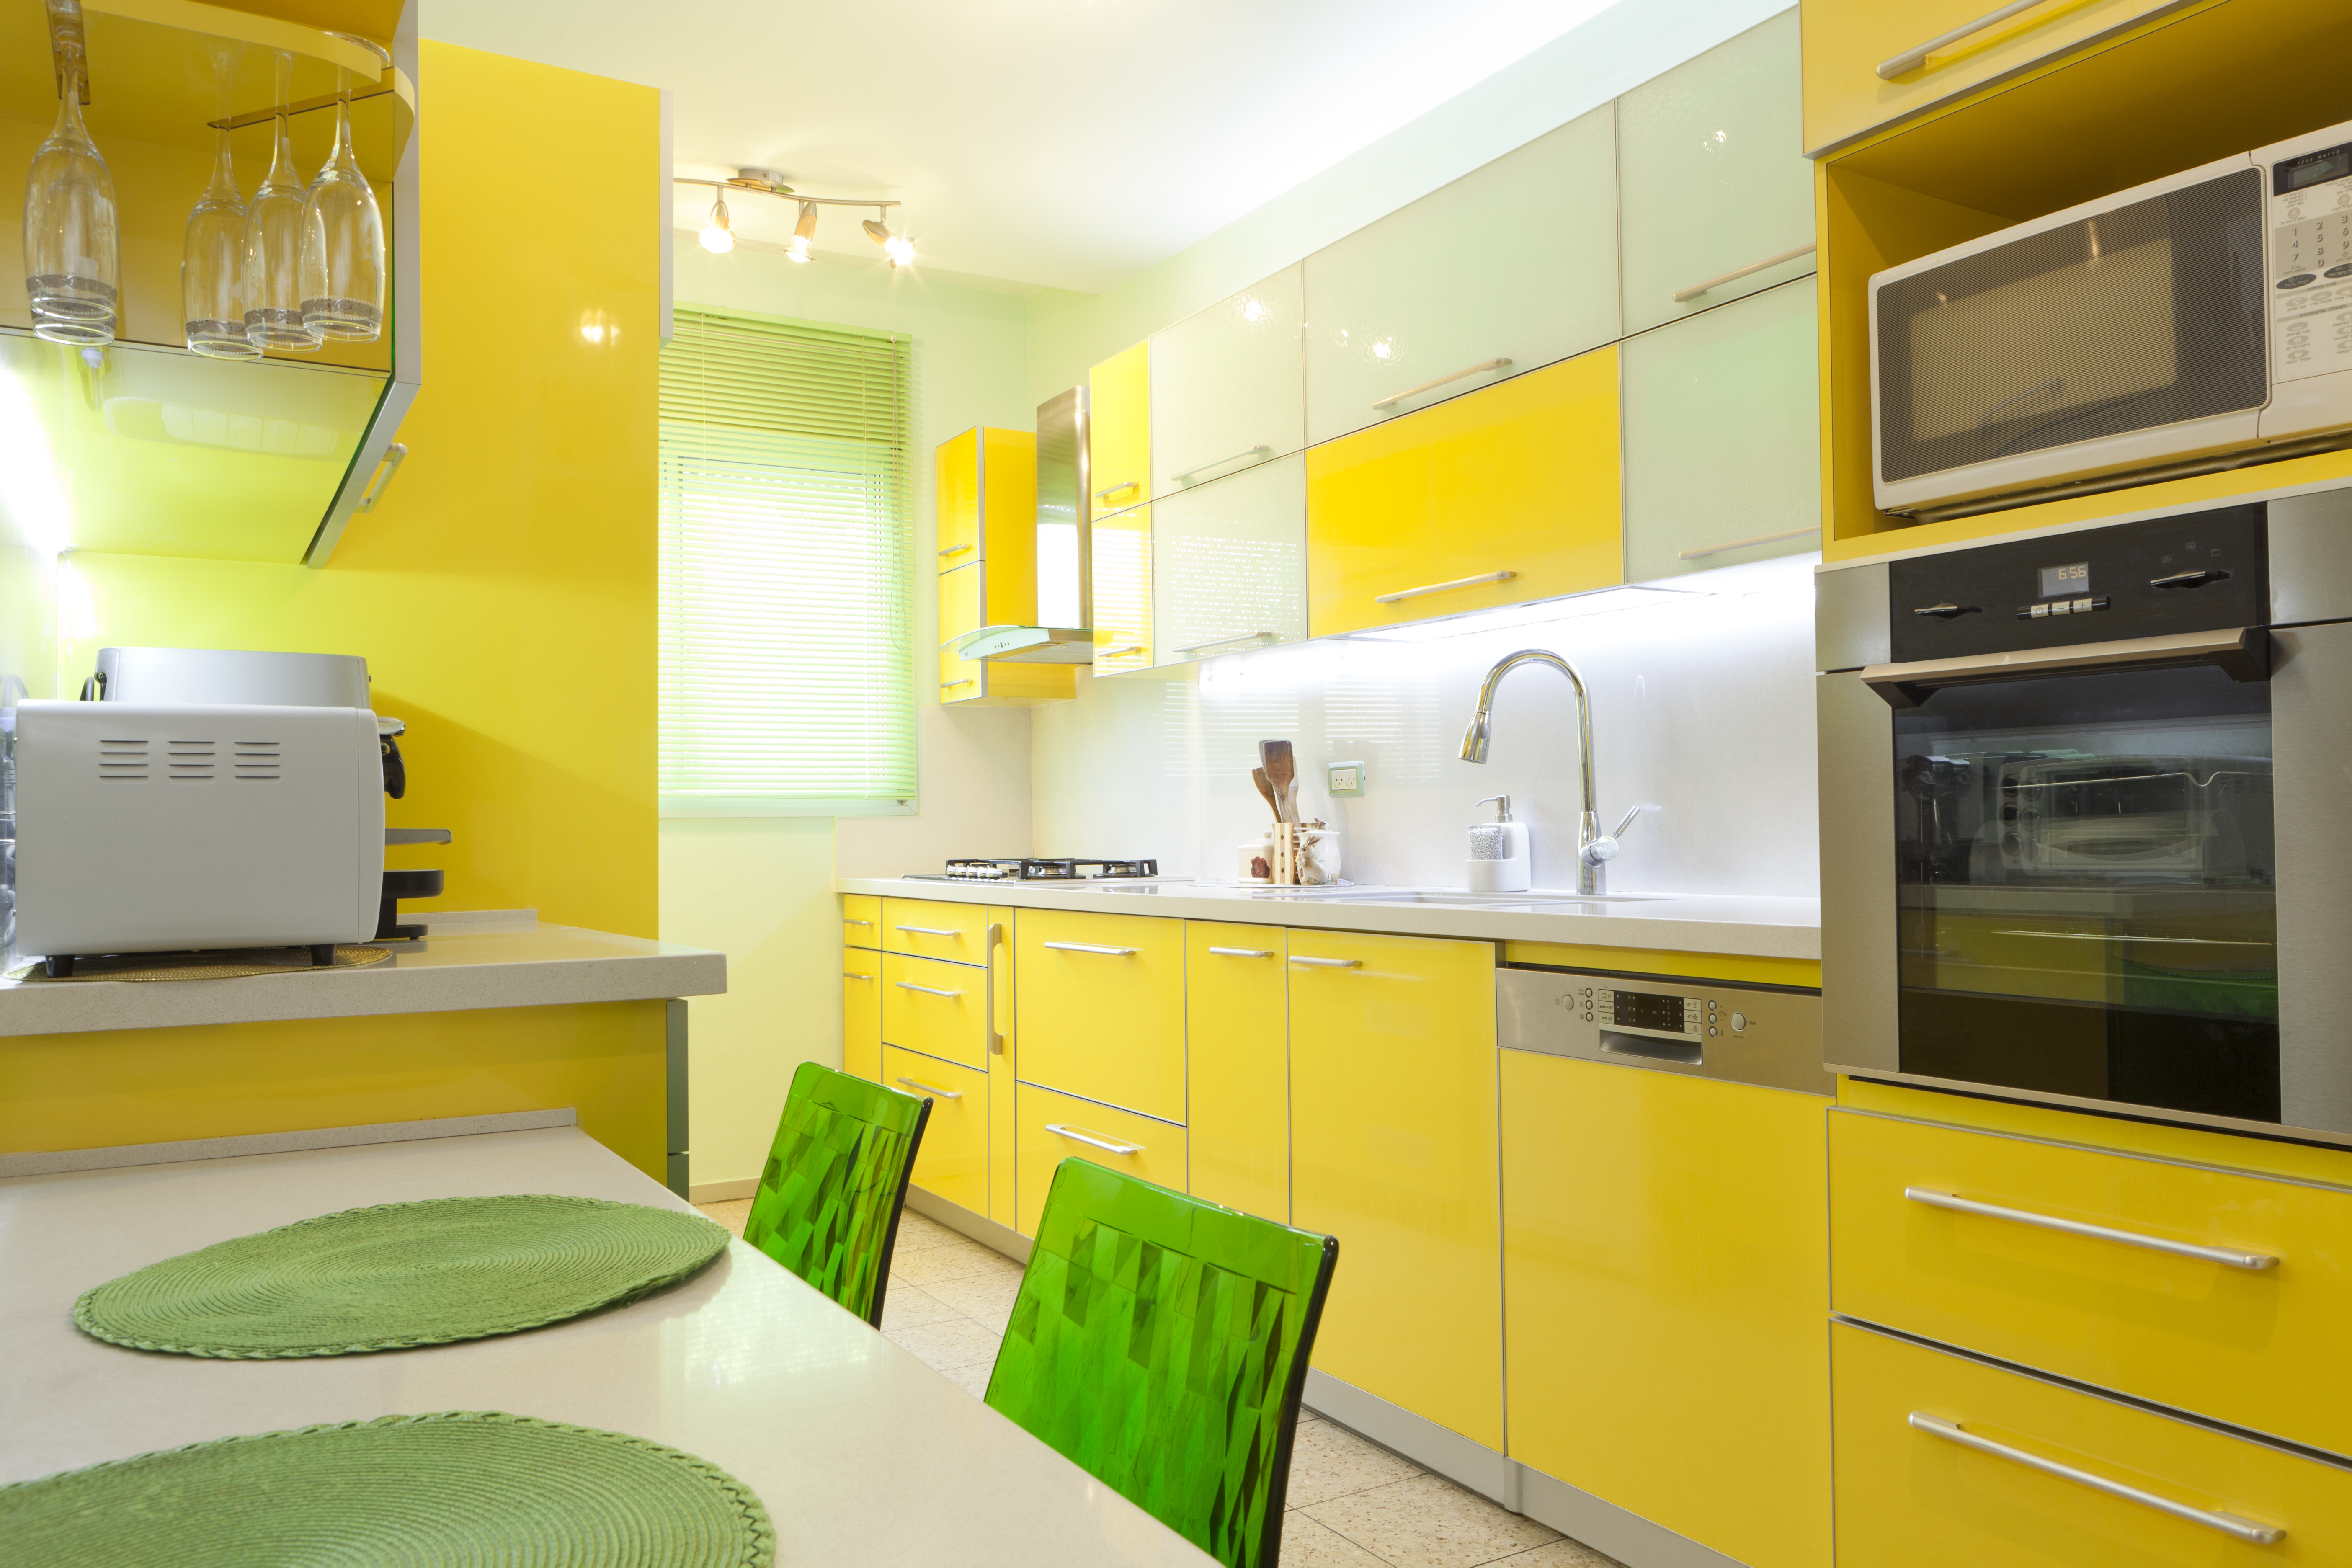 Купить желтую кухню. Желтые кухни. Яркий интерьер кухни. Кухня в желтом цвете. Желтая кухня в интерьере.